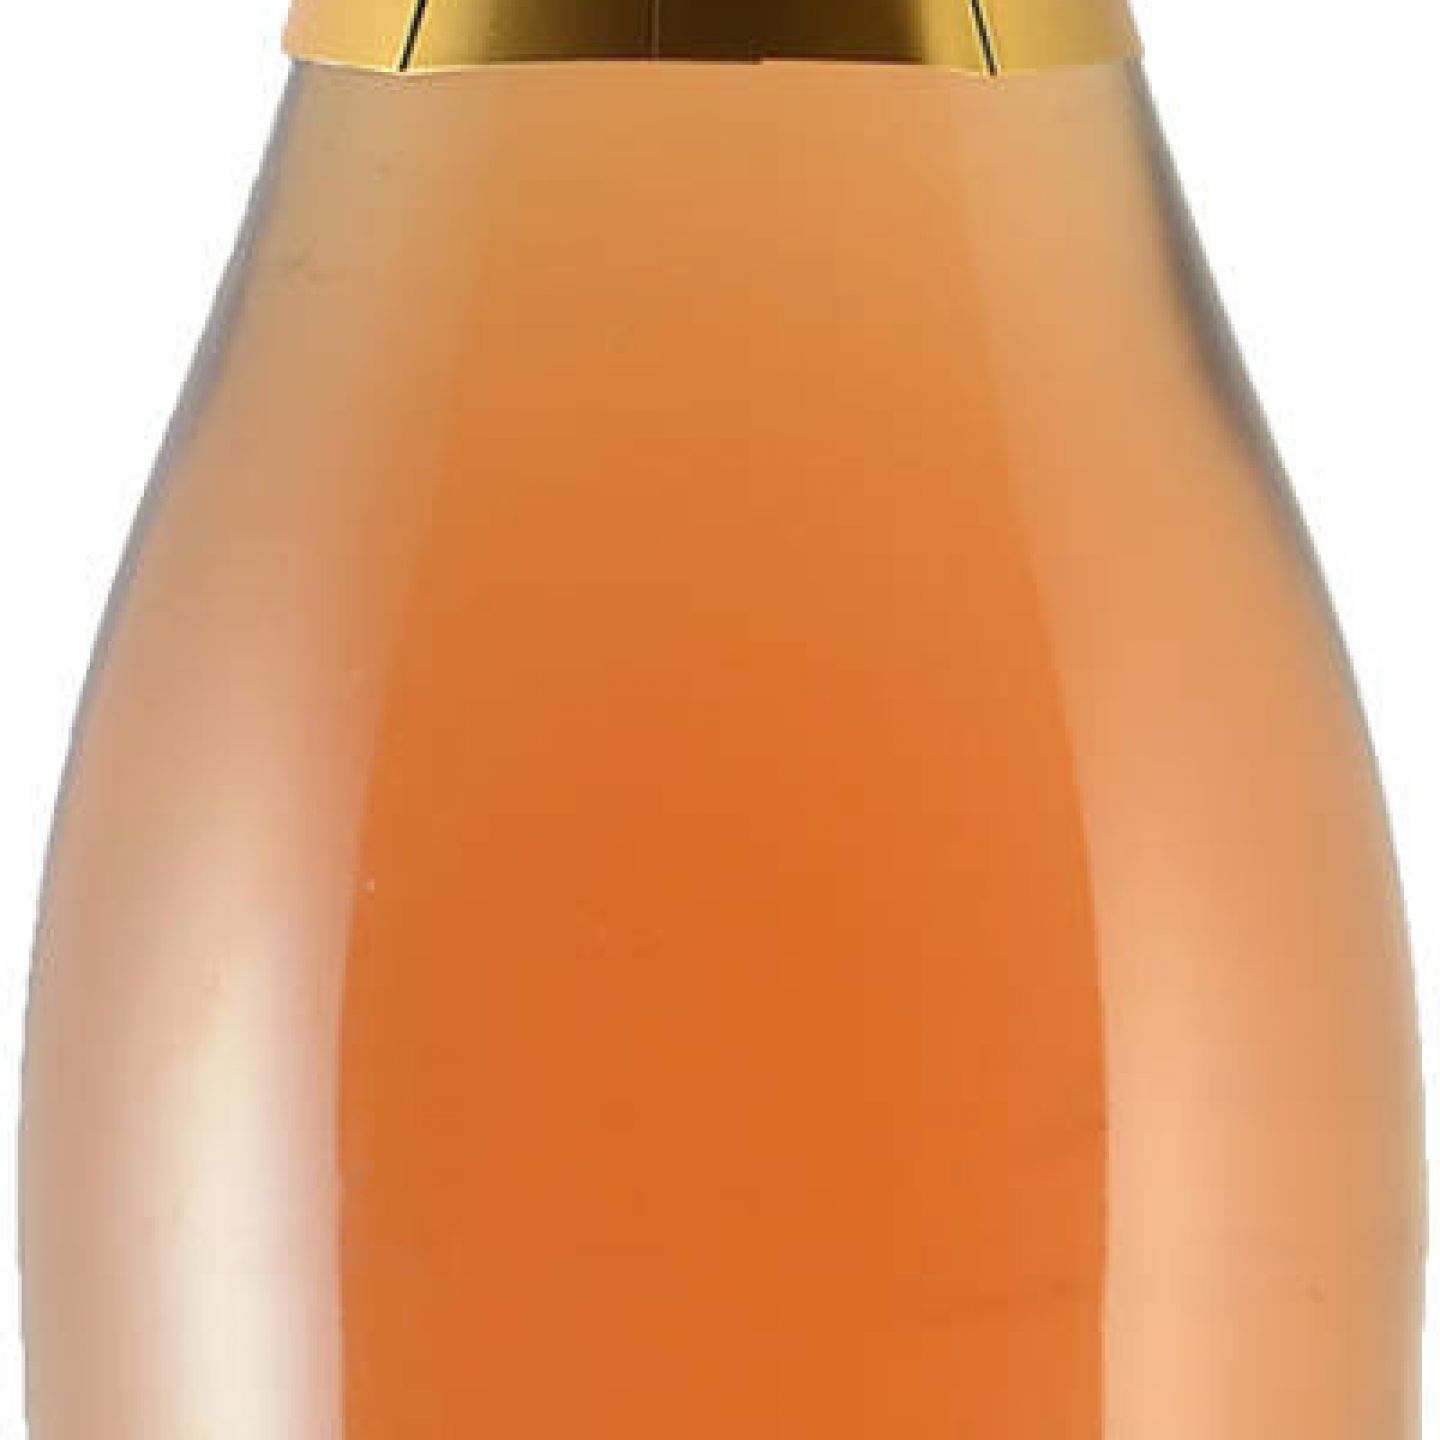 ROSÉ Carl alkoholfrei - MOUSSEUX der Vinumis - eine - Marke Standort Jung Freiwein Tulln Bauernladen VEGAN KG